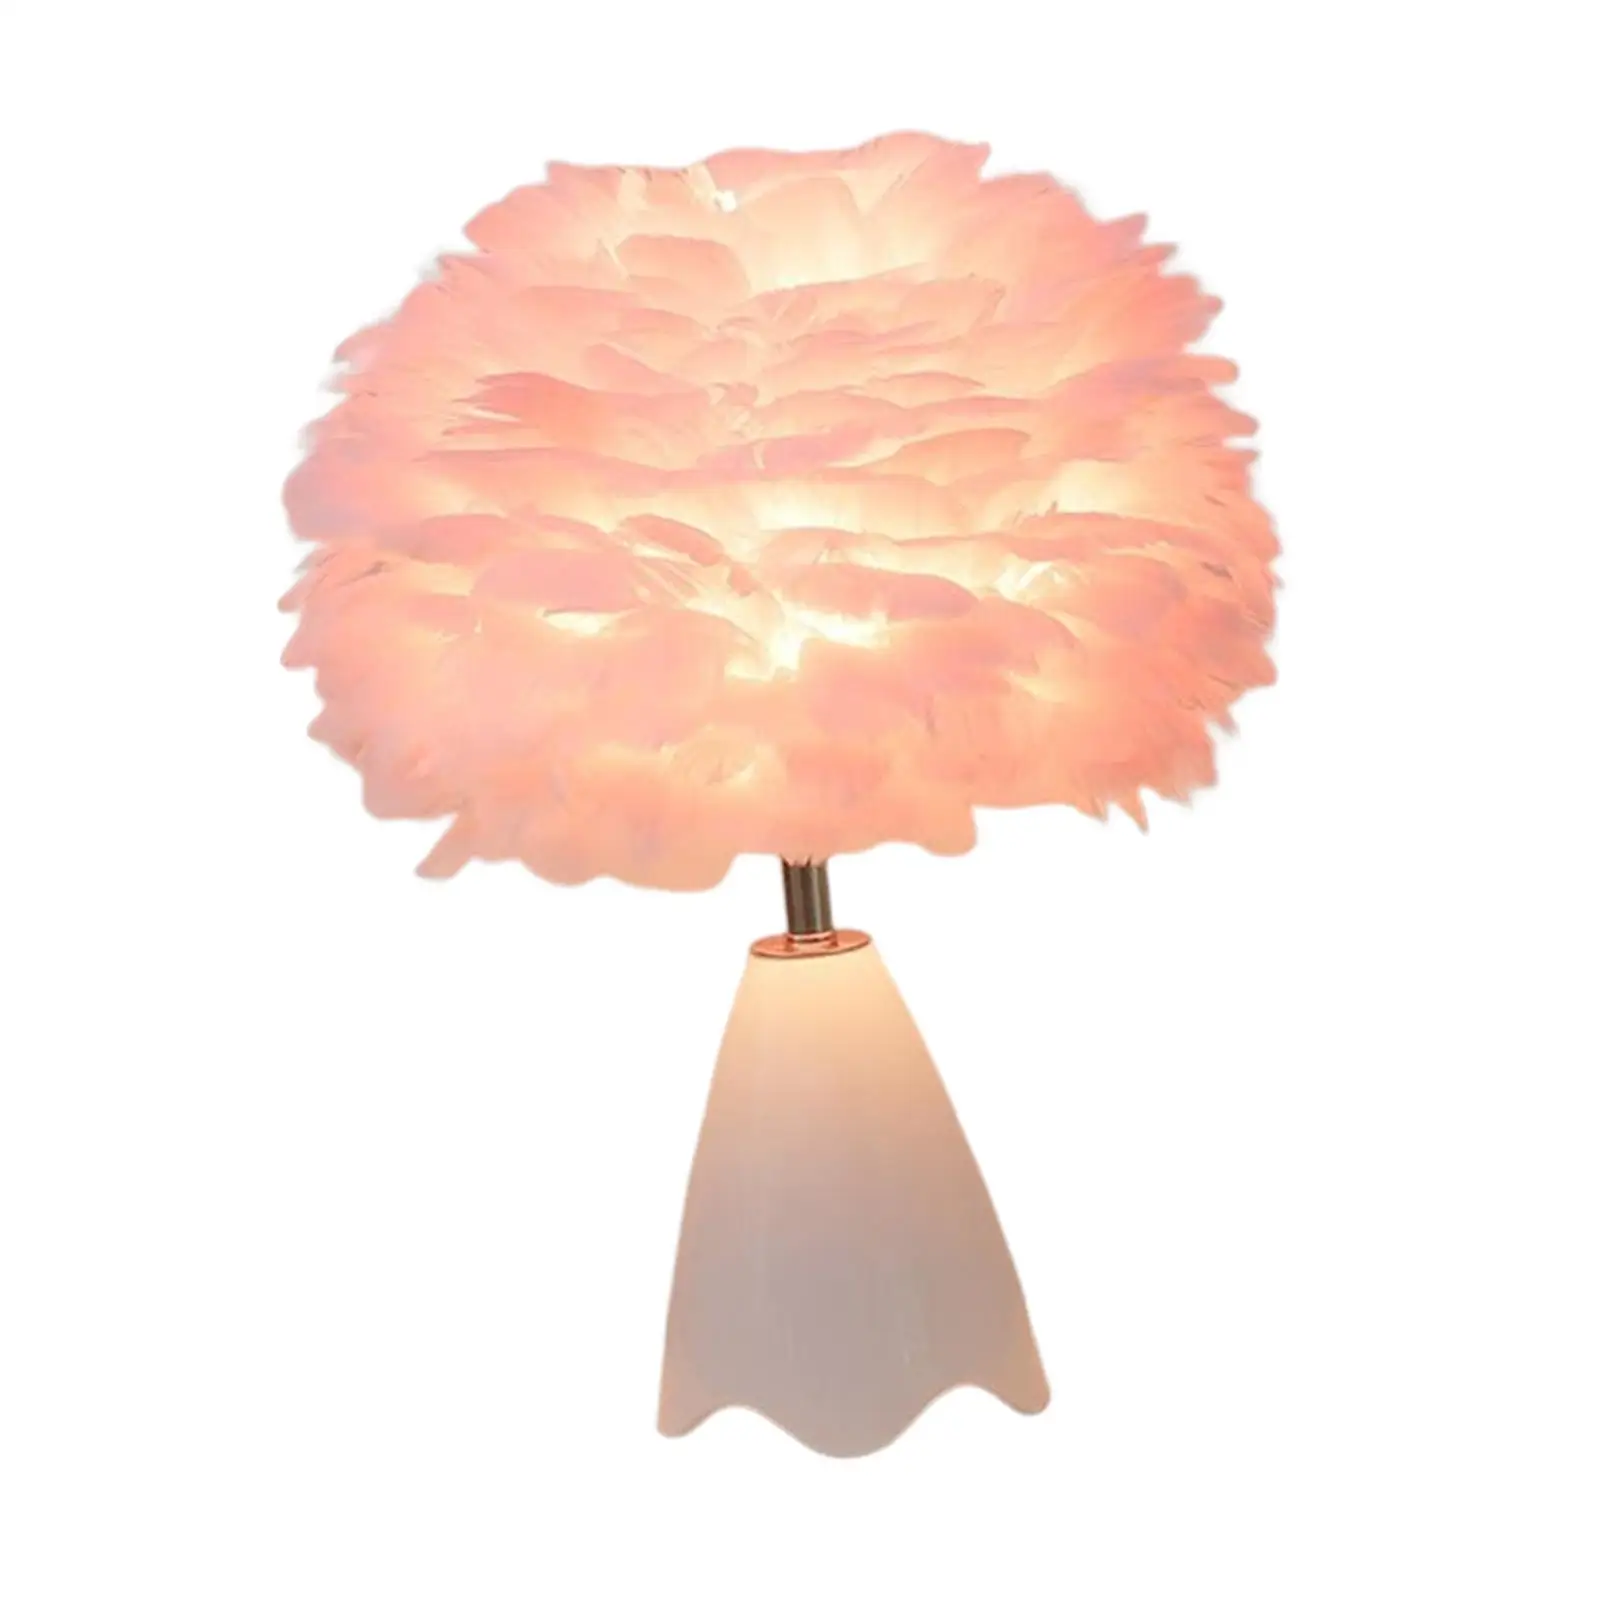 Feather Table Lamp Modern Night Light Elegant Ceramic Base for Living Room Decor Girls Gift